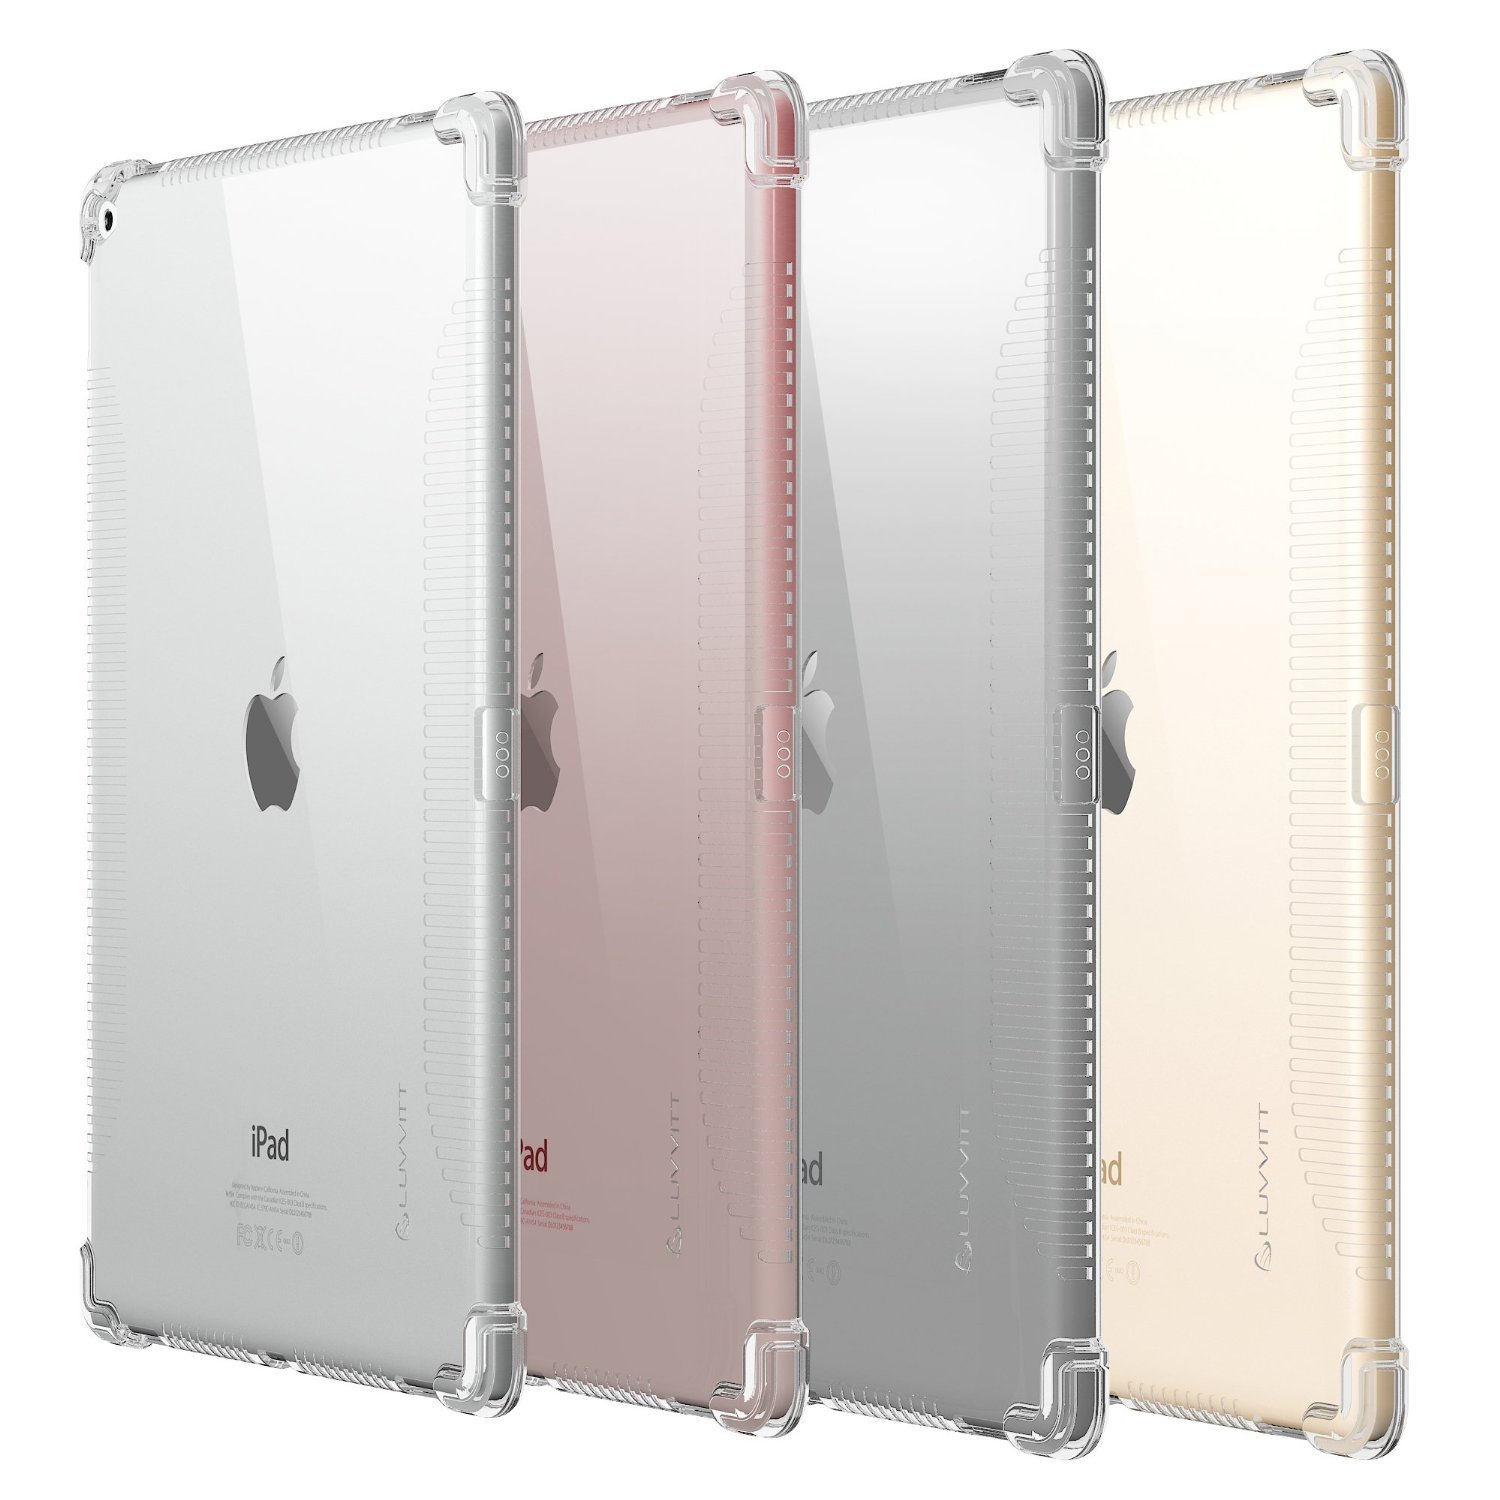 精选 7 件适用 iPad Pro 的保护壳与键盘组! - N